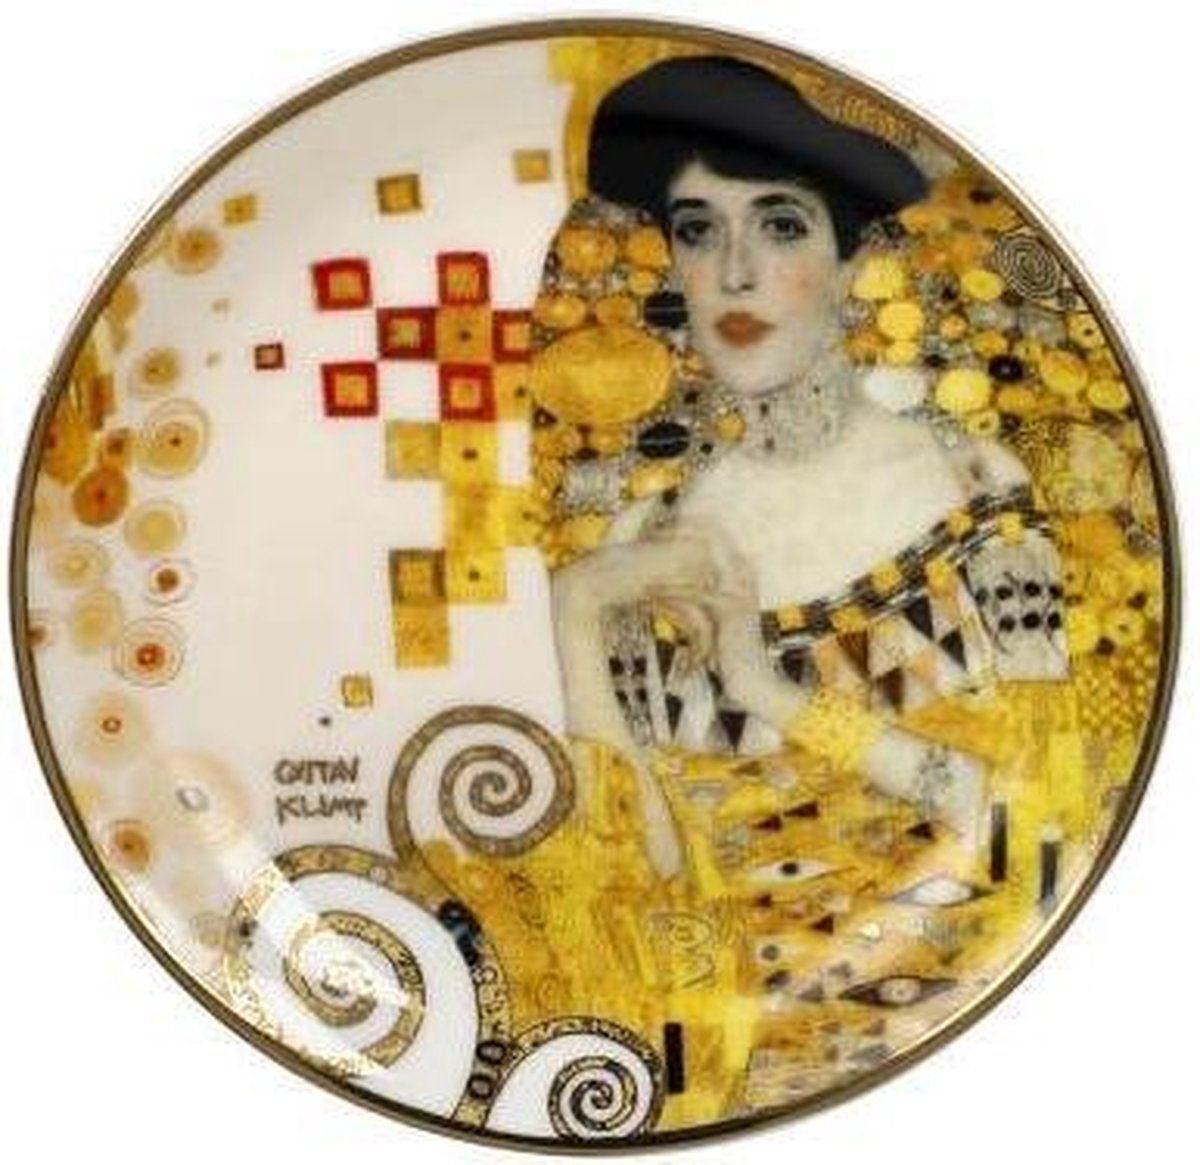 Goebel - Gustav Klimt | Sier Schoteltje Adele Bloch | Porselein - 10cm